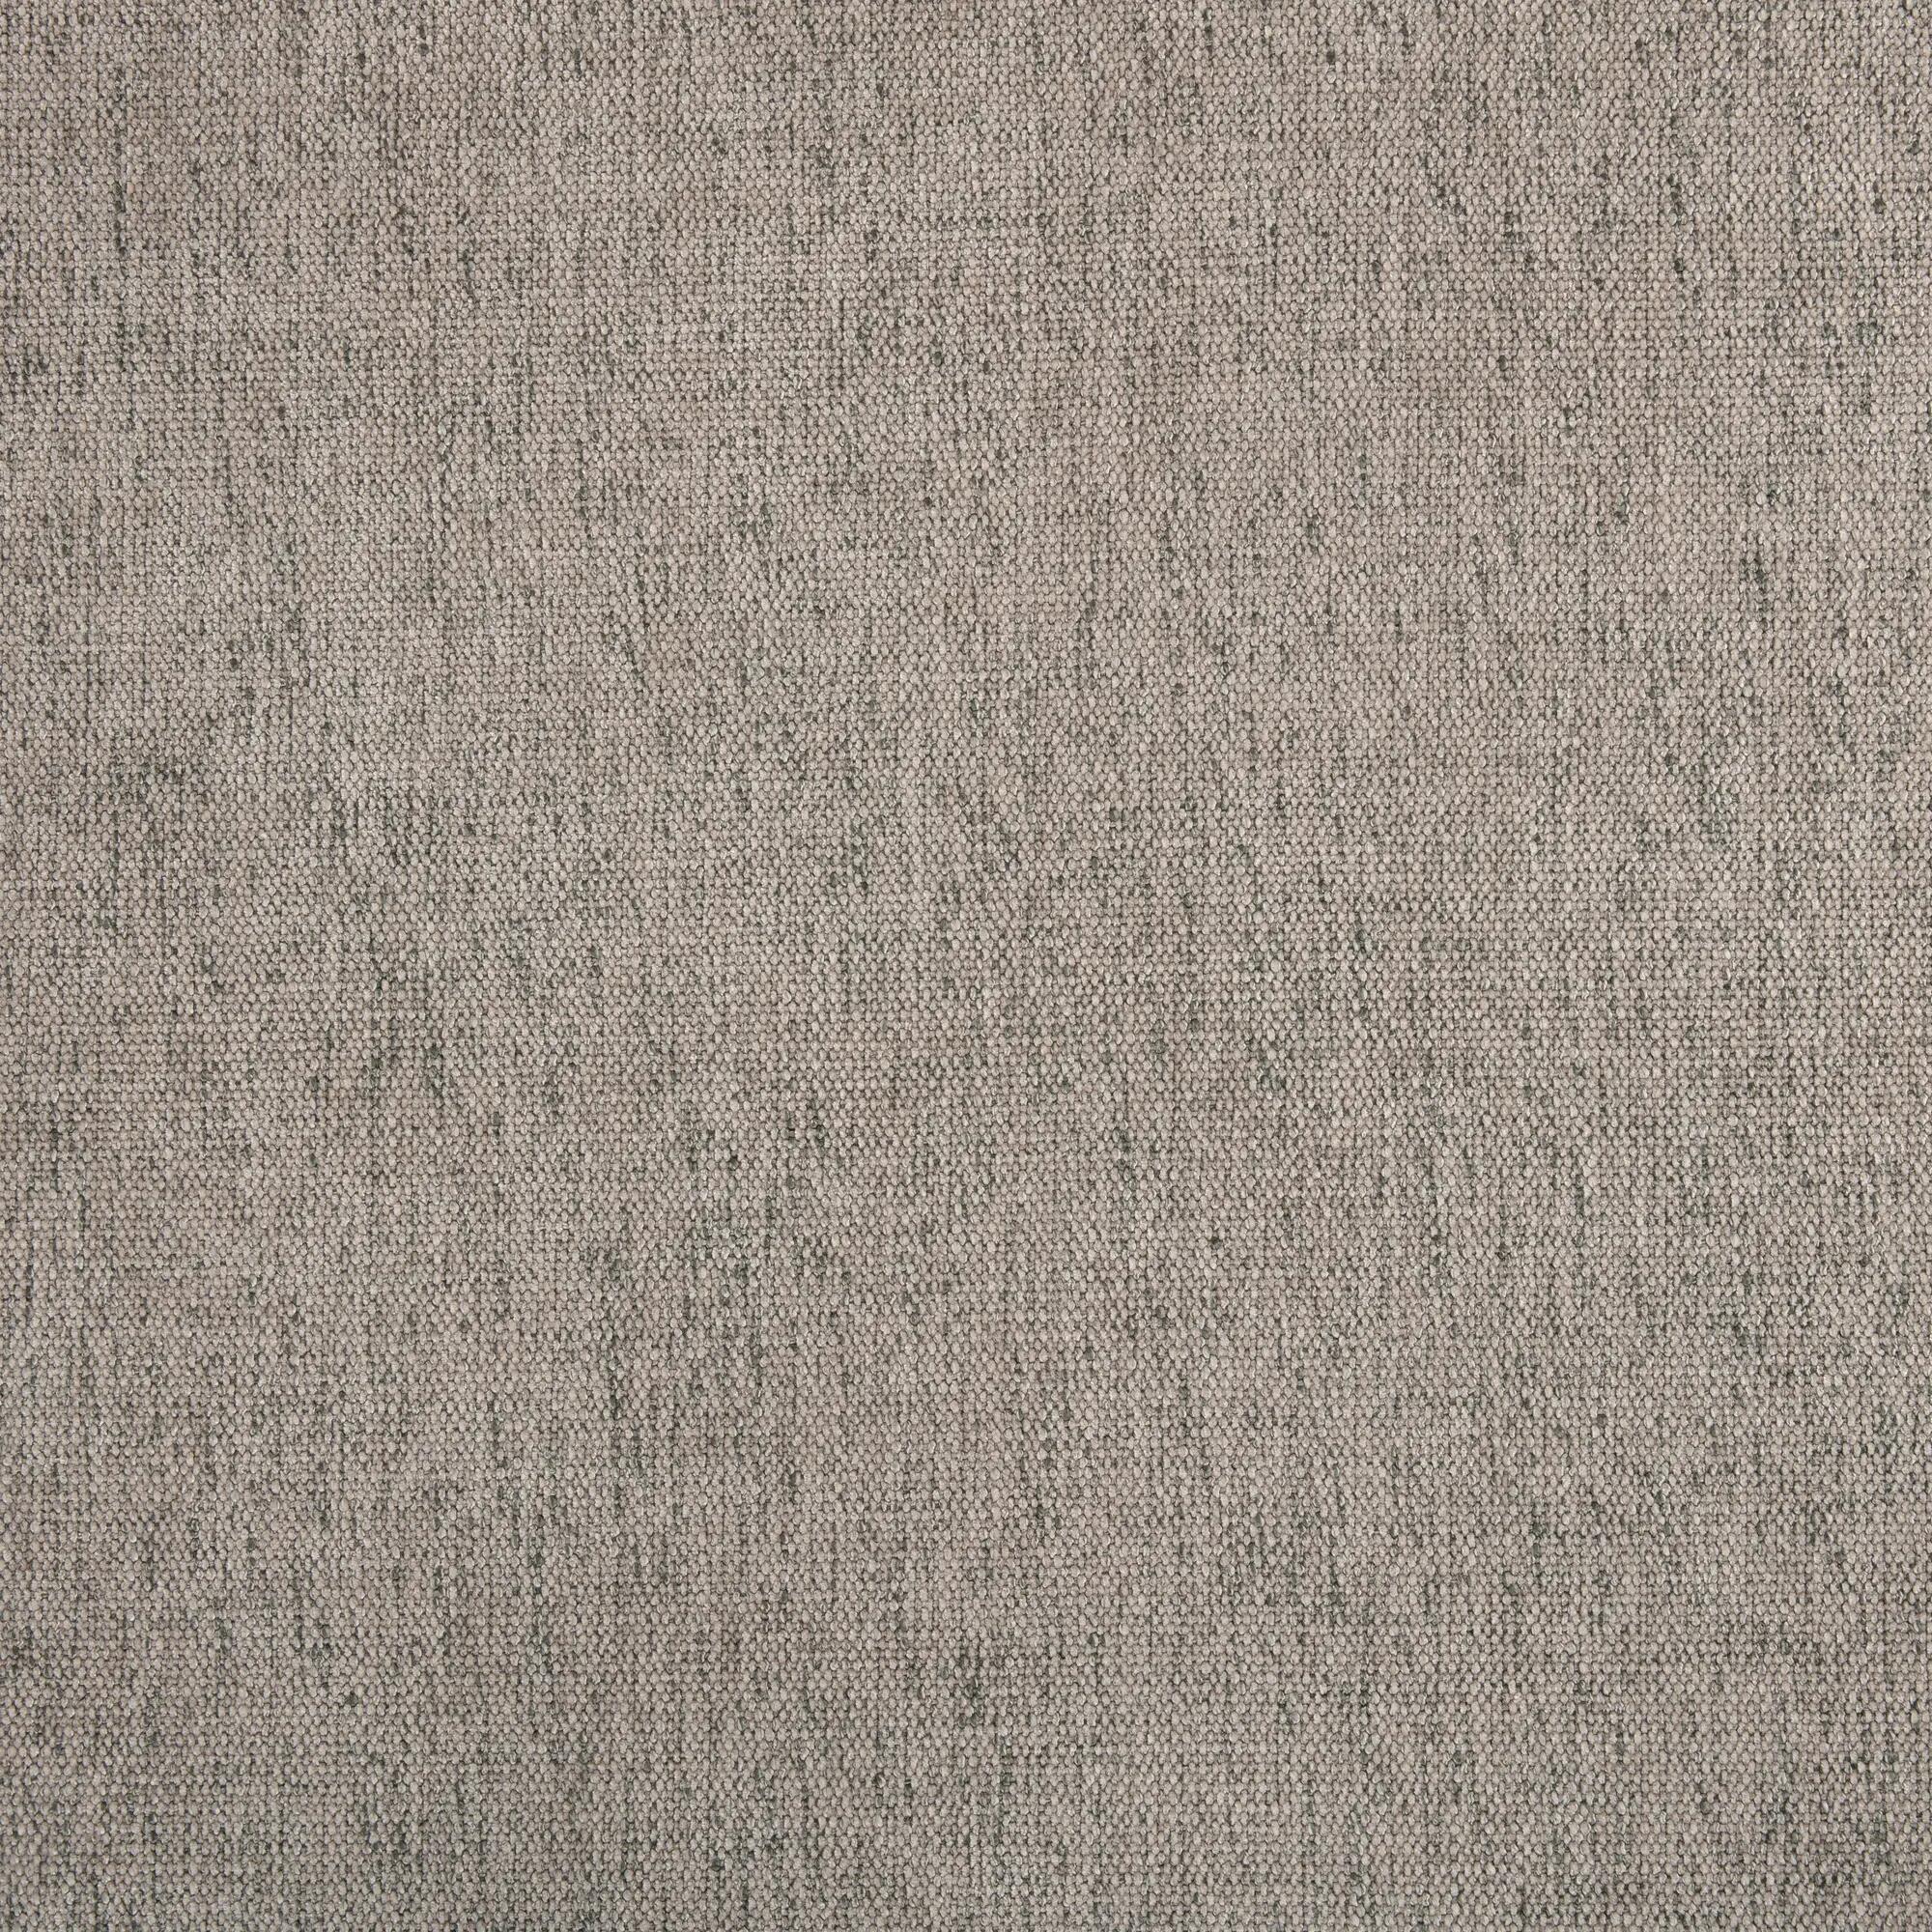 Tela al corte tapicería chenilla saima lino ancho 140 cm